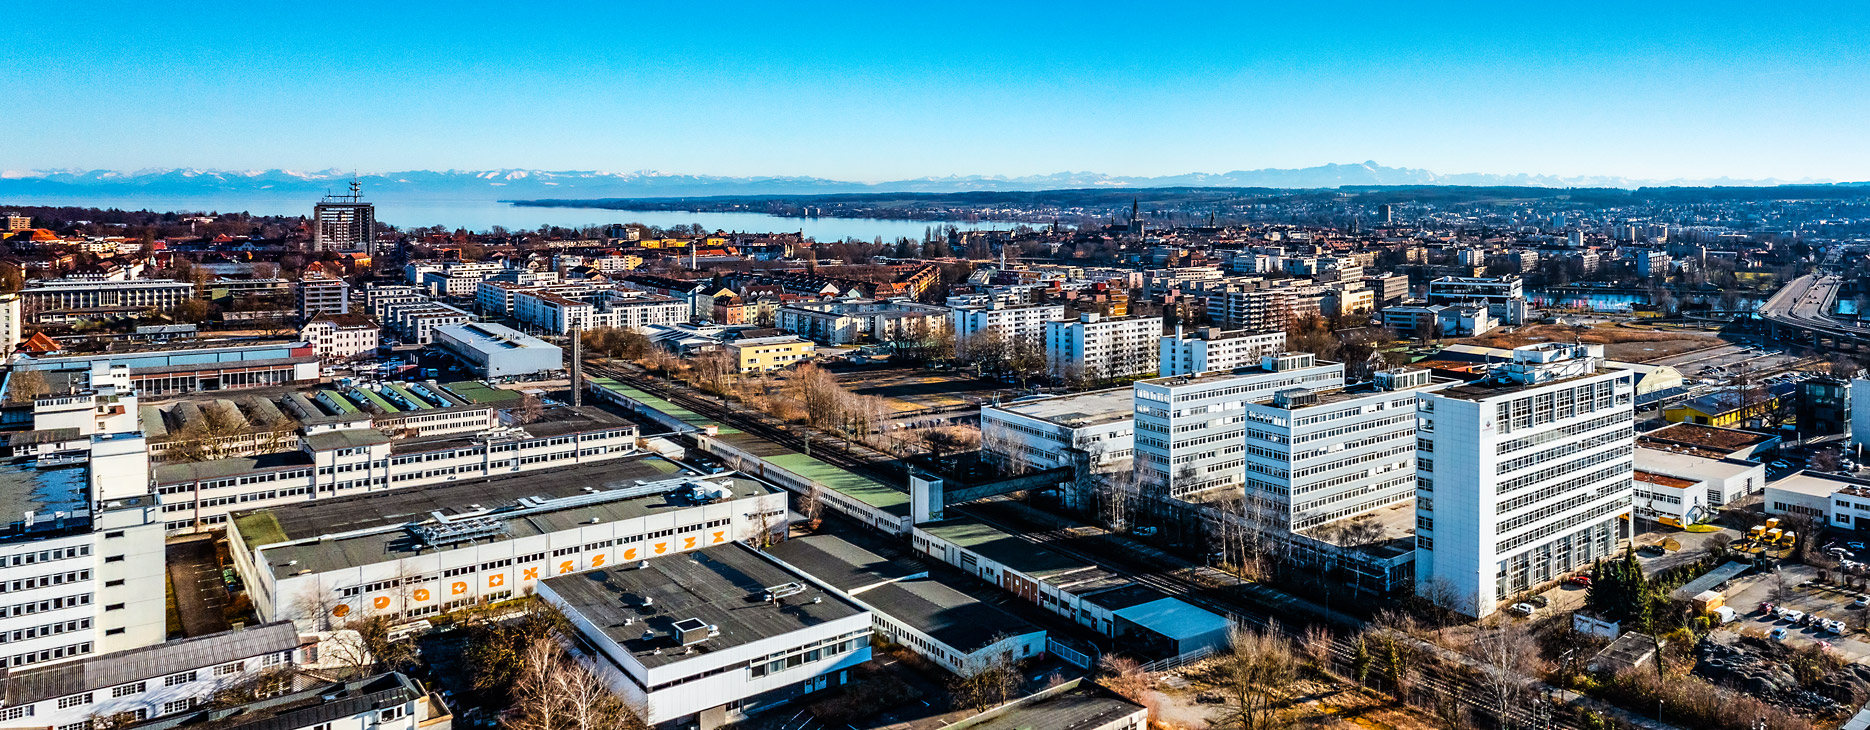 Panoramablick auf Konstanz, Teile des Bodensees und die Alpen